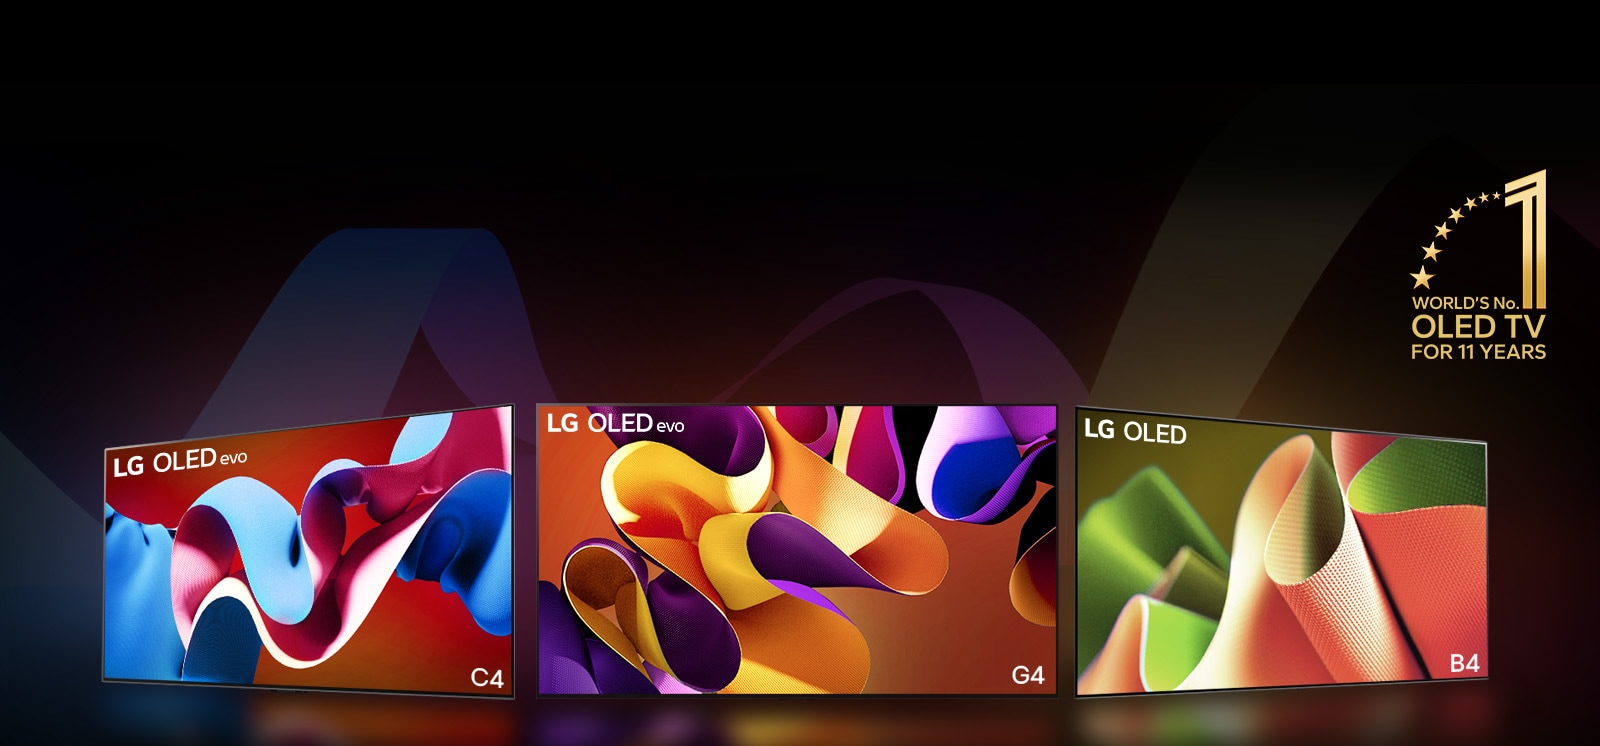 PC: LG OLED evo G4, LG OLED evo C4 và LG OLED B4 được đặt cạnh nhau, mỗi màn hình hiển thị một tác phẩm nghệ thuật trừu tượng có màu sắc khác nhau. Mỗi TV đều phát ra ánh sáng chiếu xuống mặt đất. Hình ảnh biểu tượng OLED TV đứng đầu thế giới trong 11 năm màu vàng nằm ở góc trên cùng bên phải.  MO: LG OLED evo G4, LG OLED evo C4 và LG OLED B4 được đặt thành hàng, mỗi màn hình hiển thị một tác phẩm nghệ thuật trừu tượng có màu sắc khác nhau. Mỗi TV đều phát ra ánh sáng chiếu xuống mặt đất. Hình ảnh biểu tượng OLED TV đứng đầu thế giới trong 11 năm màu vàng nằm ở góc trên cùng bên phải.